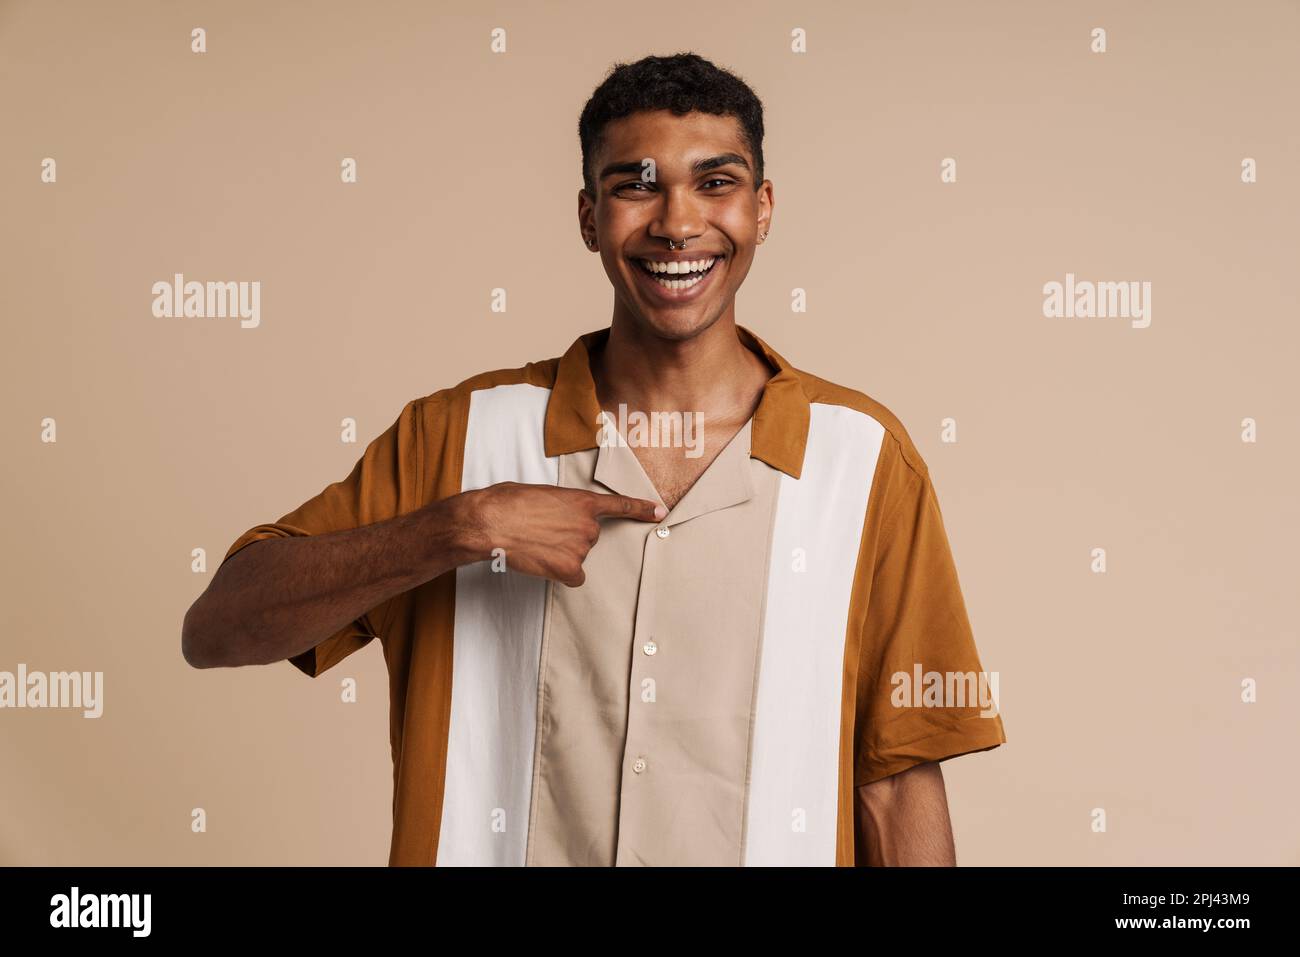 Ein junger, gutaussehender, glücklicher afrikaner mit Piercing, der auf sich selbst zeigt und in die Kamera schaut, während er über einem isolierten beigen Hintergrund steht Stockfoto